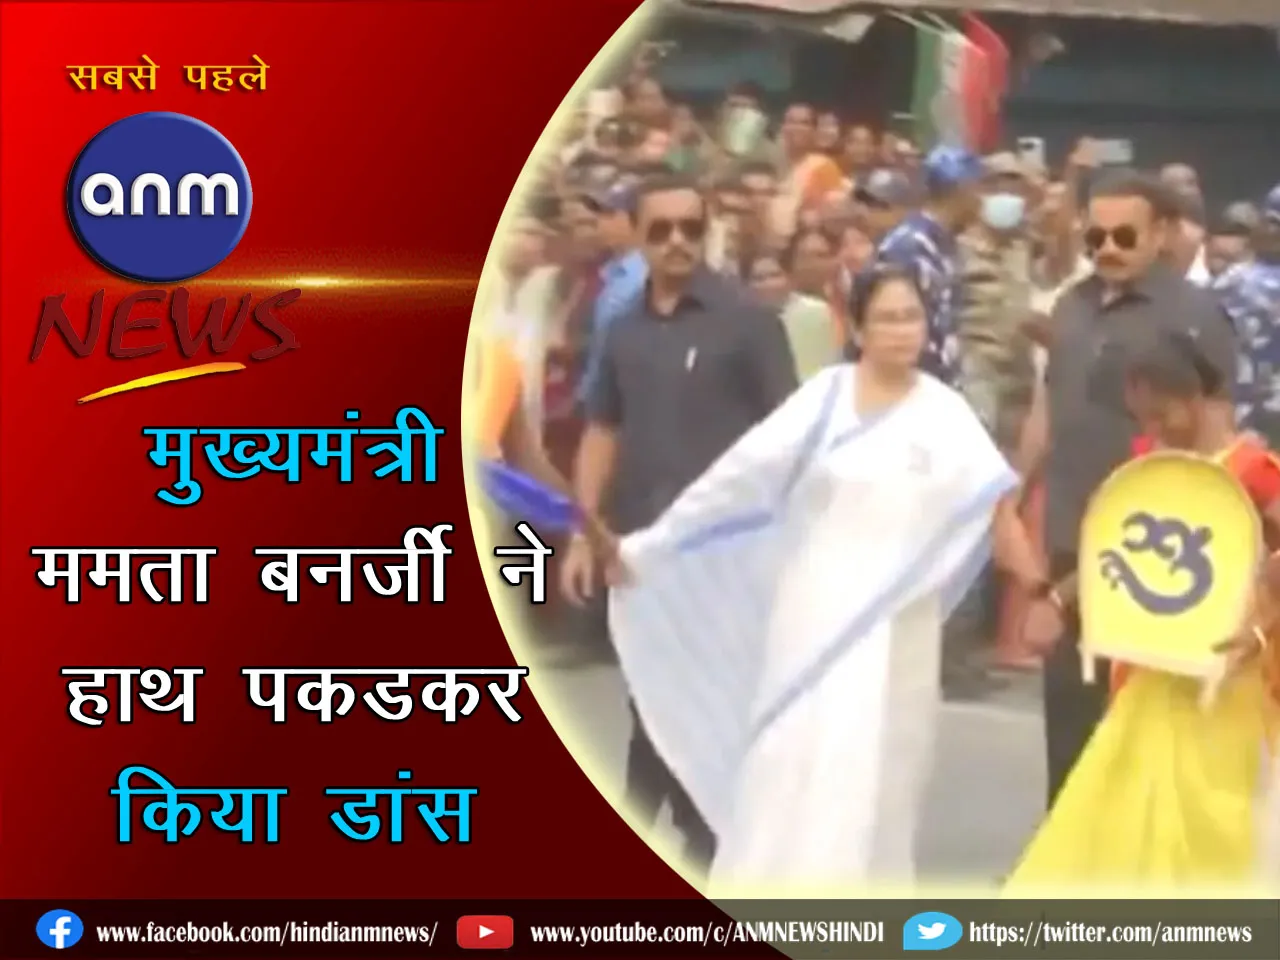 मुख्यमंत्री ममता बनर्जी ने हाथ पकड़कर किया डांस, देखें वीडियो